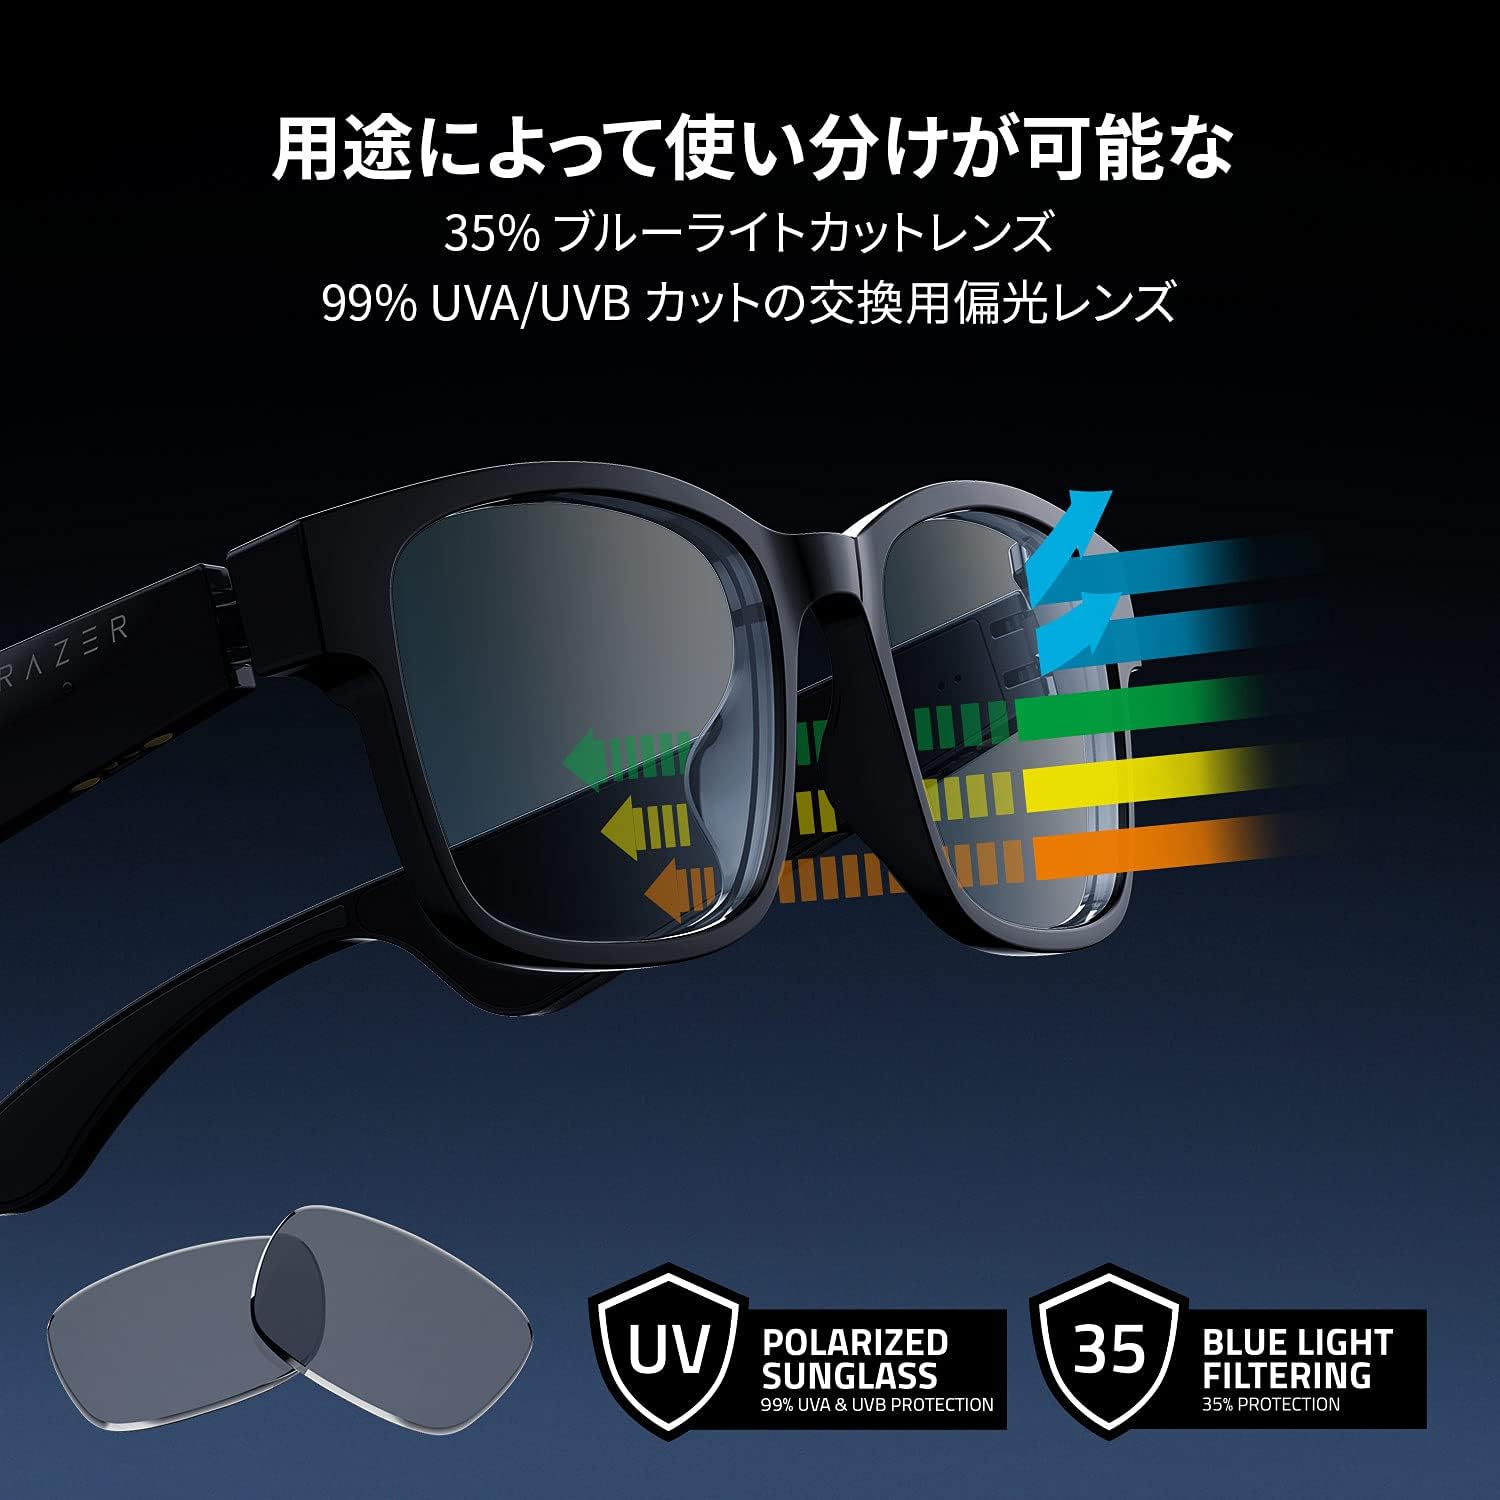 amazon, bluetoothでさまざまな機器と接続できるrazerのスマートグラス「anzu smart glasses rectangle」lサイズがamazonにて33％オフで販売中